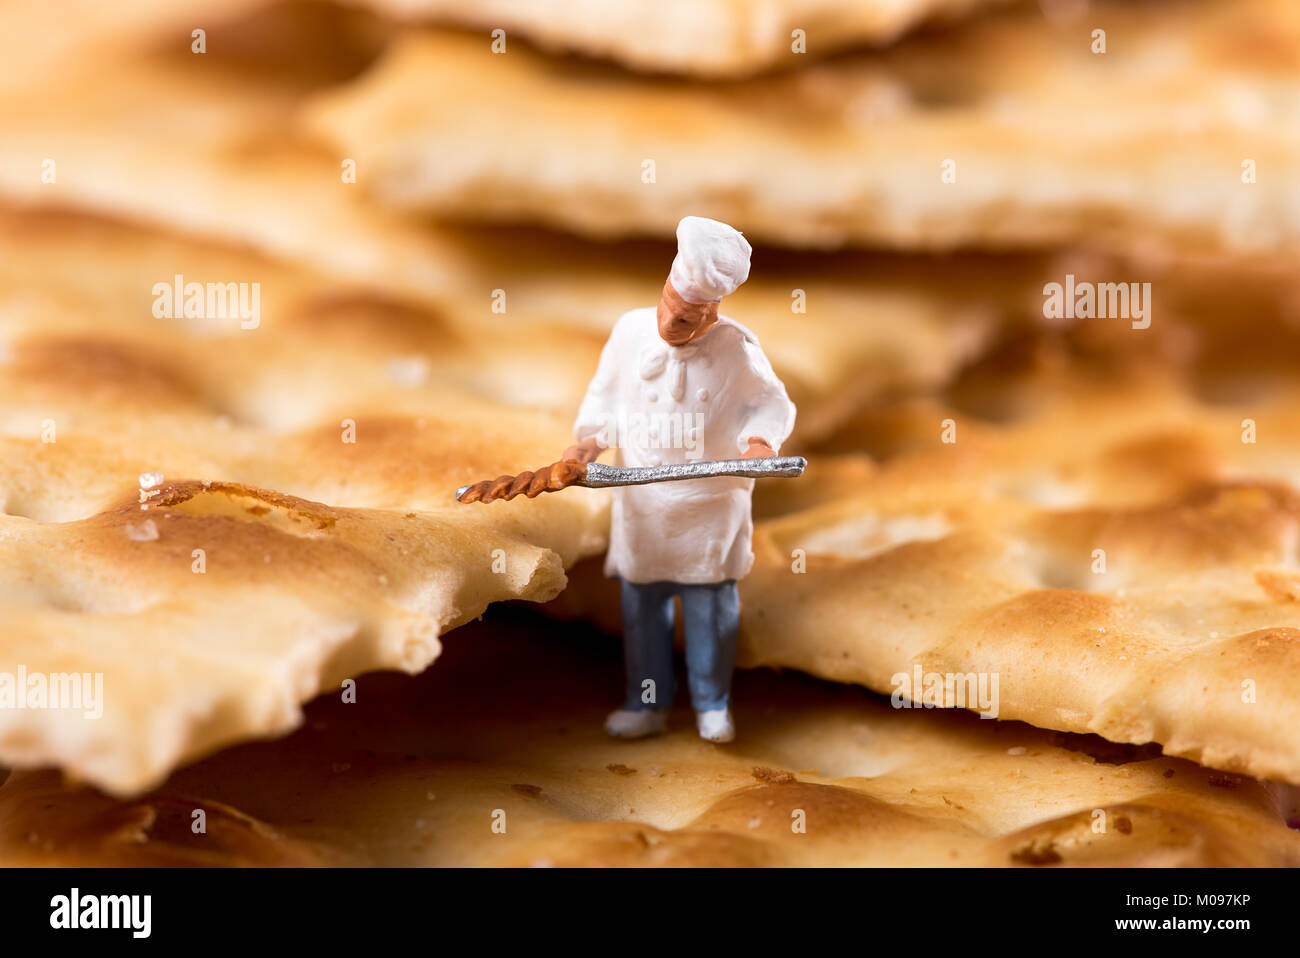 Petite figure de chef dans des BISCUITS Biscuits croquants à bord dans un concept d'une boulangerie et de la boulangerie Banque D'Images